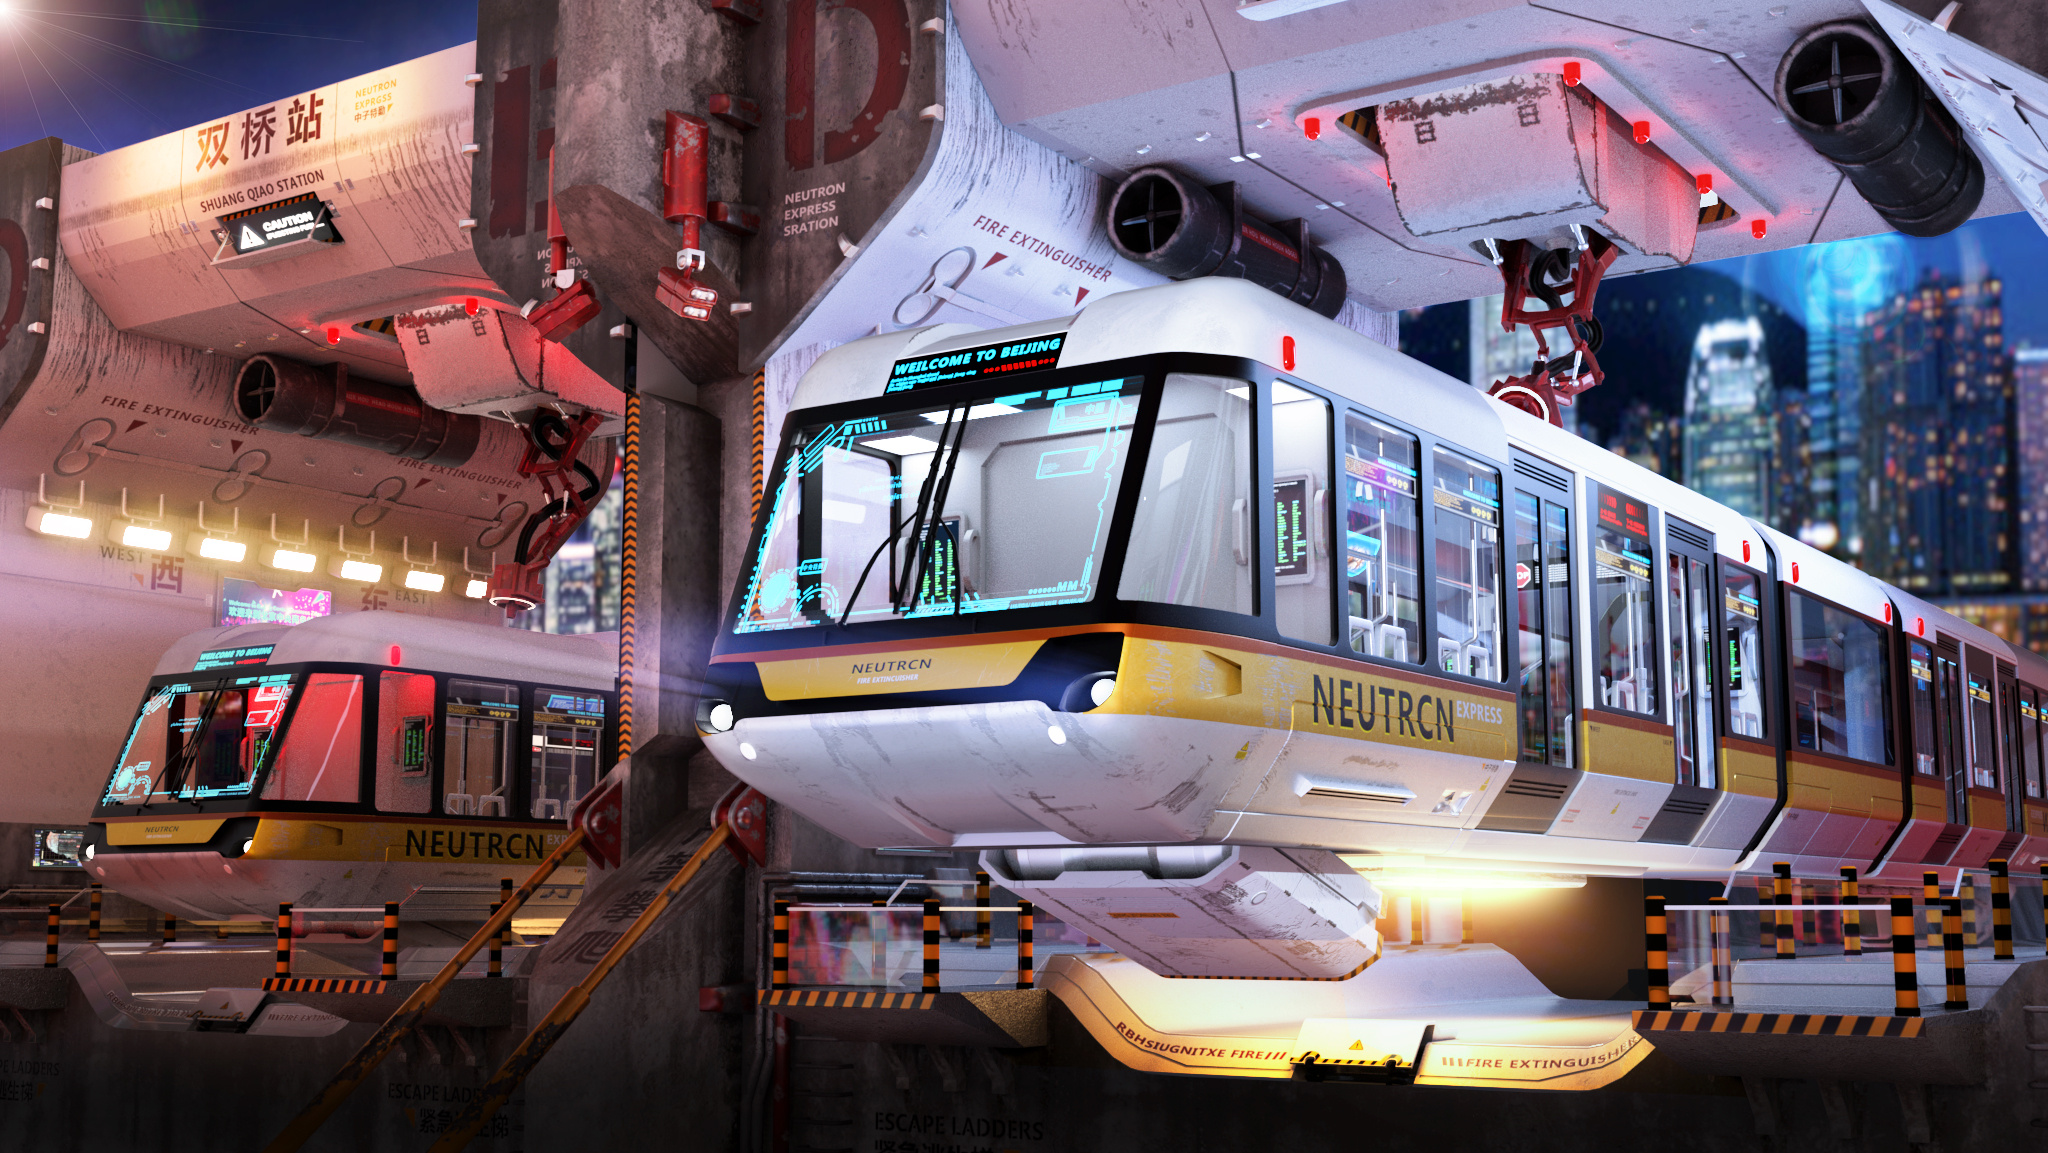 【概念设计】Magnetic Train 黑色炫酷火车设计代表着未来的速度感~ - 普象网